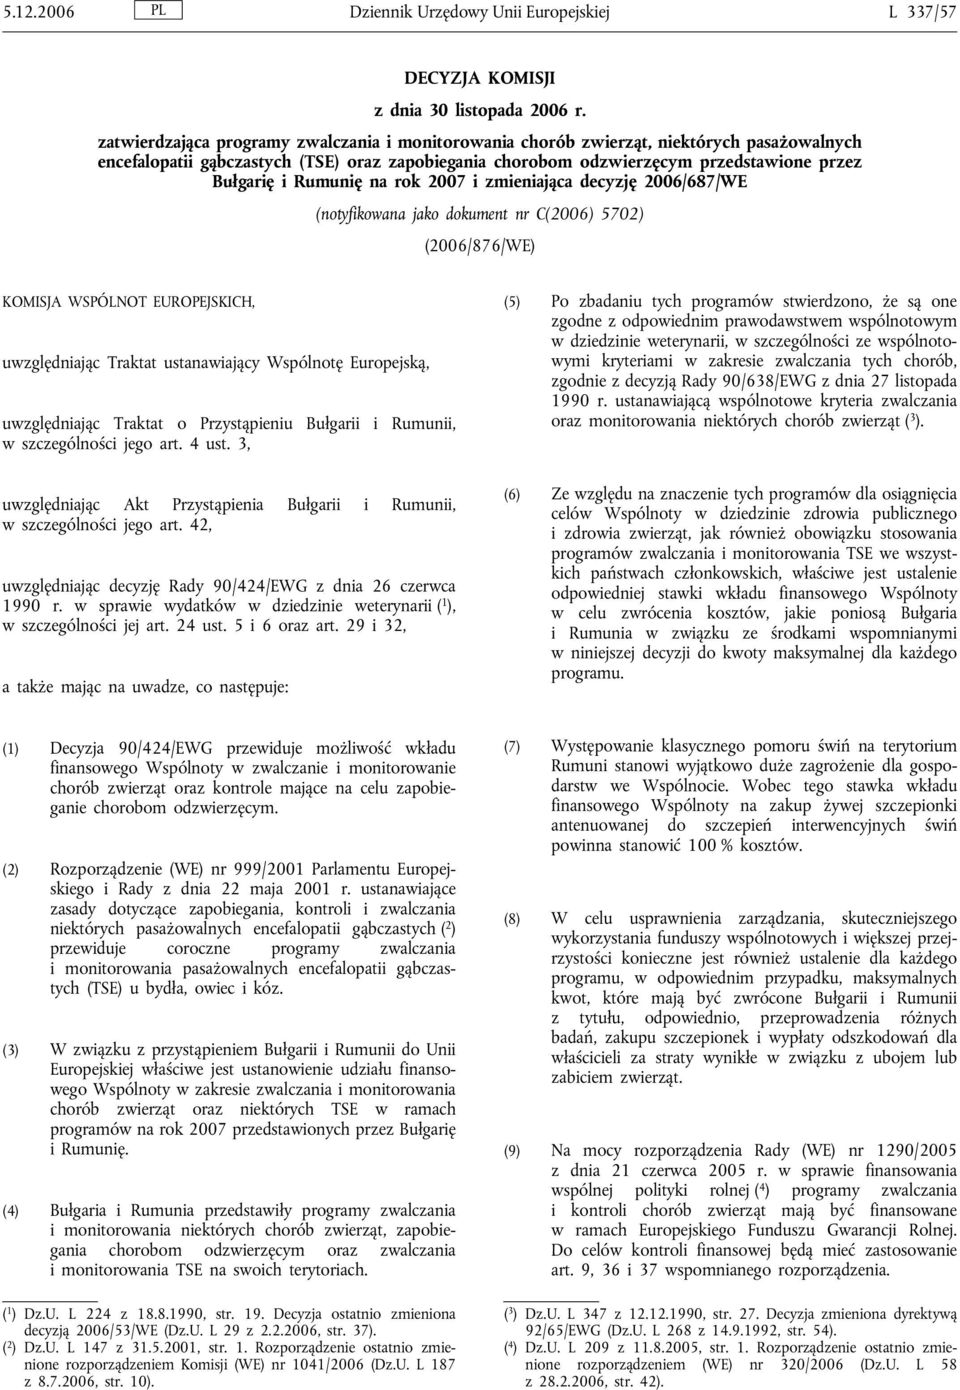 Rumunię na rok 2007 i zmieniająca decyzję 2006/687/WE (notyfikowana jako dokument nr C(2006) 5702) (2006/876/WE) KOMISJA WSPÓLNOT EUROPEJSKICH, uwzględniając Traktat ustanawiający Wspólnotę